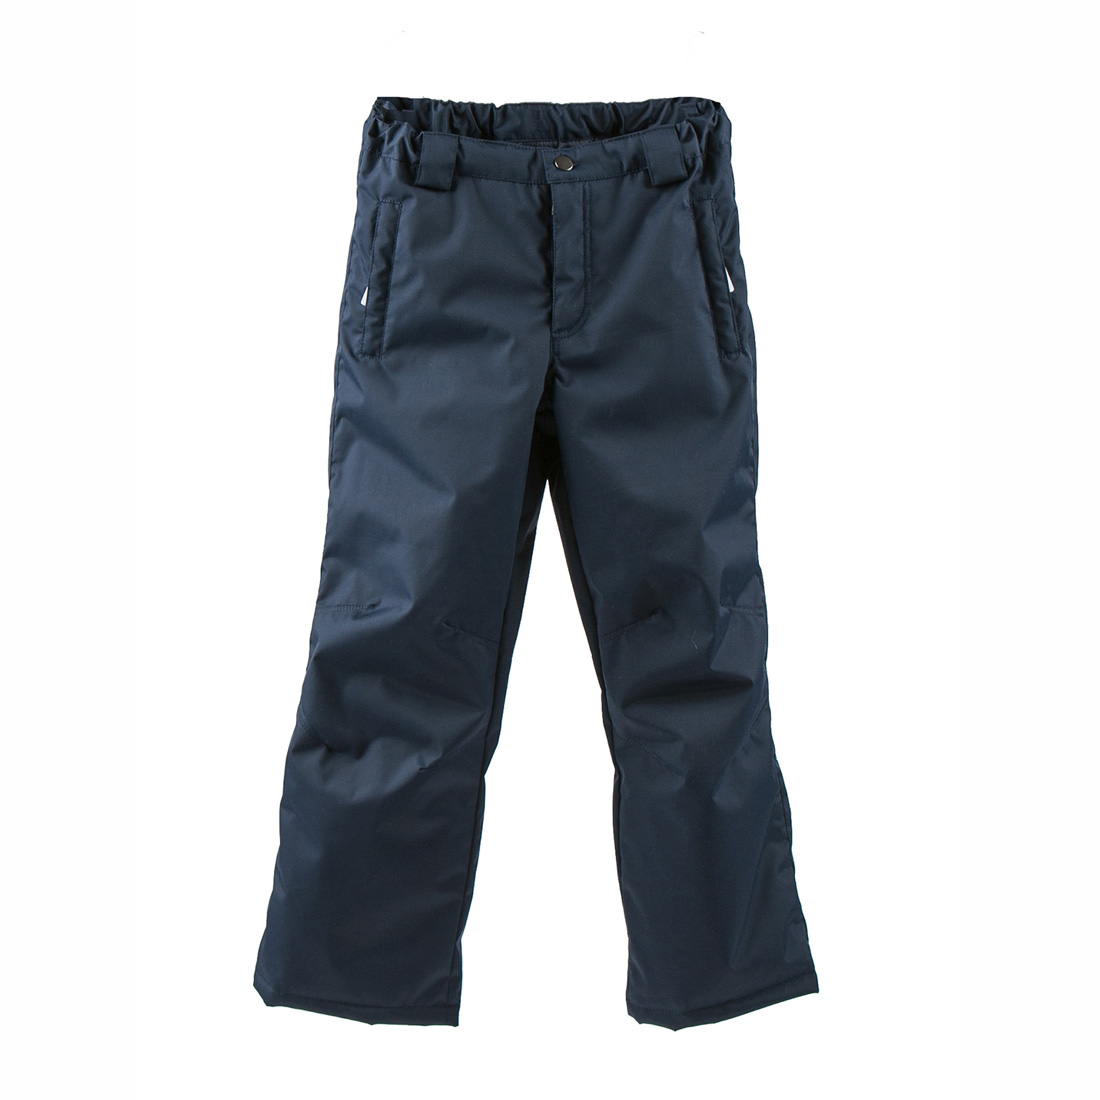 Купить брюки KERRY MARCEL +SIZE K19456, размер 164, цены в Москве наМегамаркет